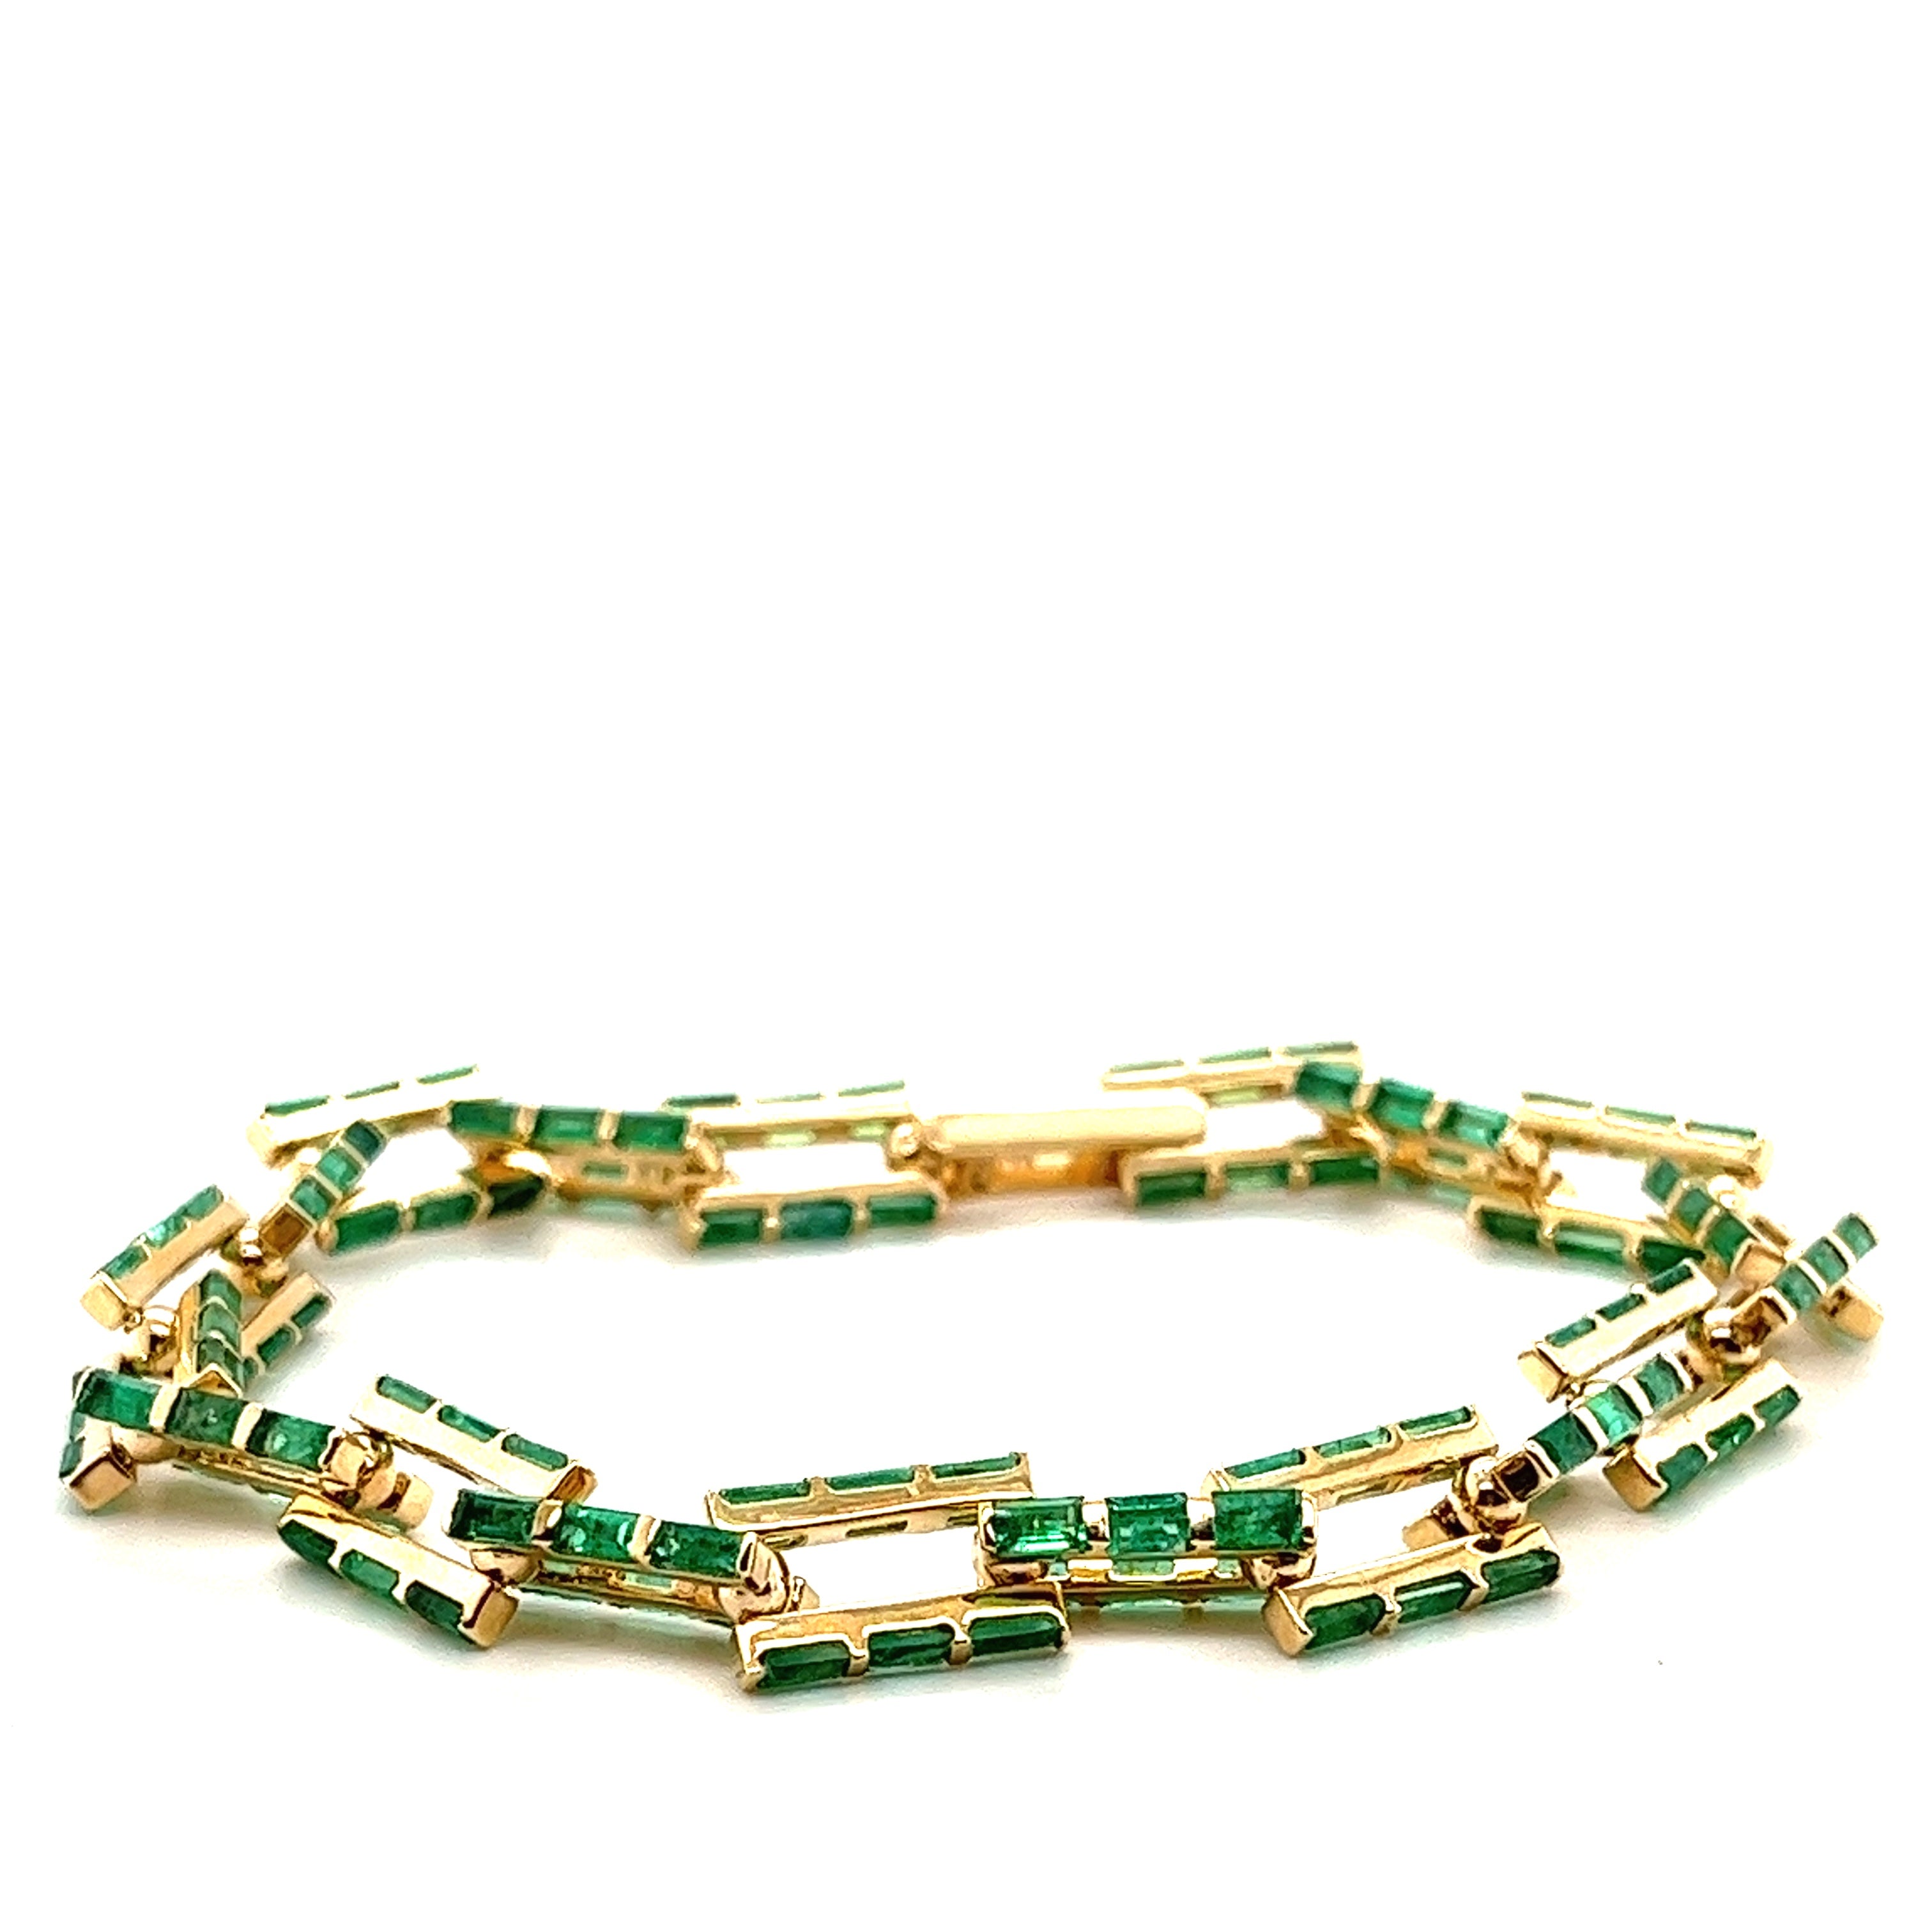 The Paloma Link Bracelet